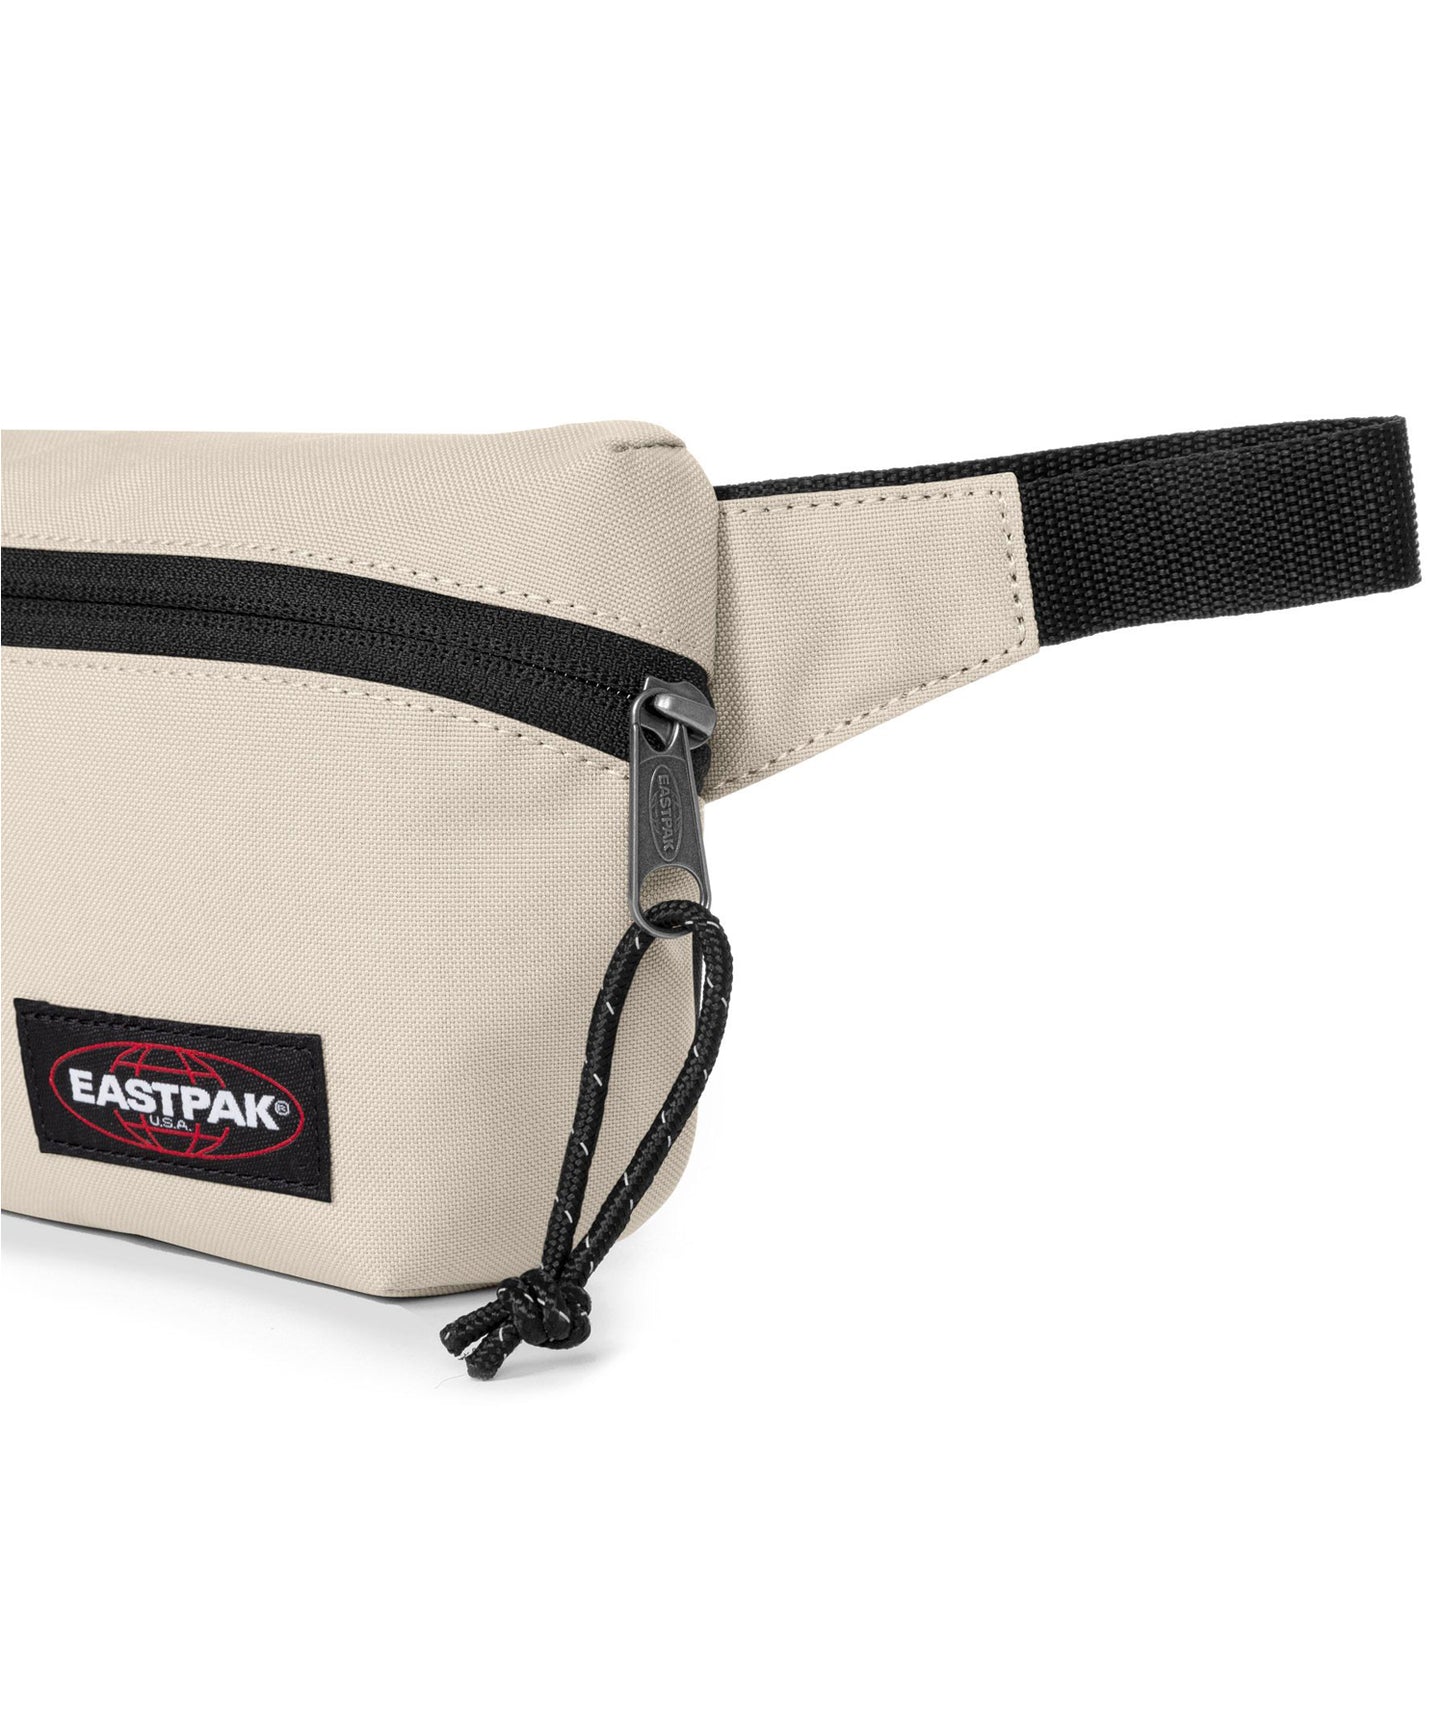 eastpak-rinonera-somar-boulder-color-beige-4-litros-de-capacidad-durabilidad-asegurada-nailon-y-poliéster.